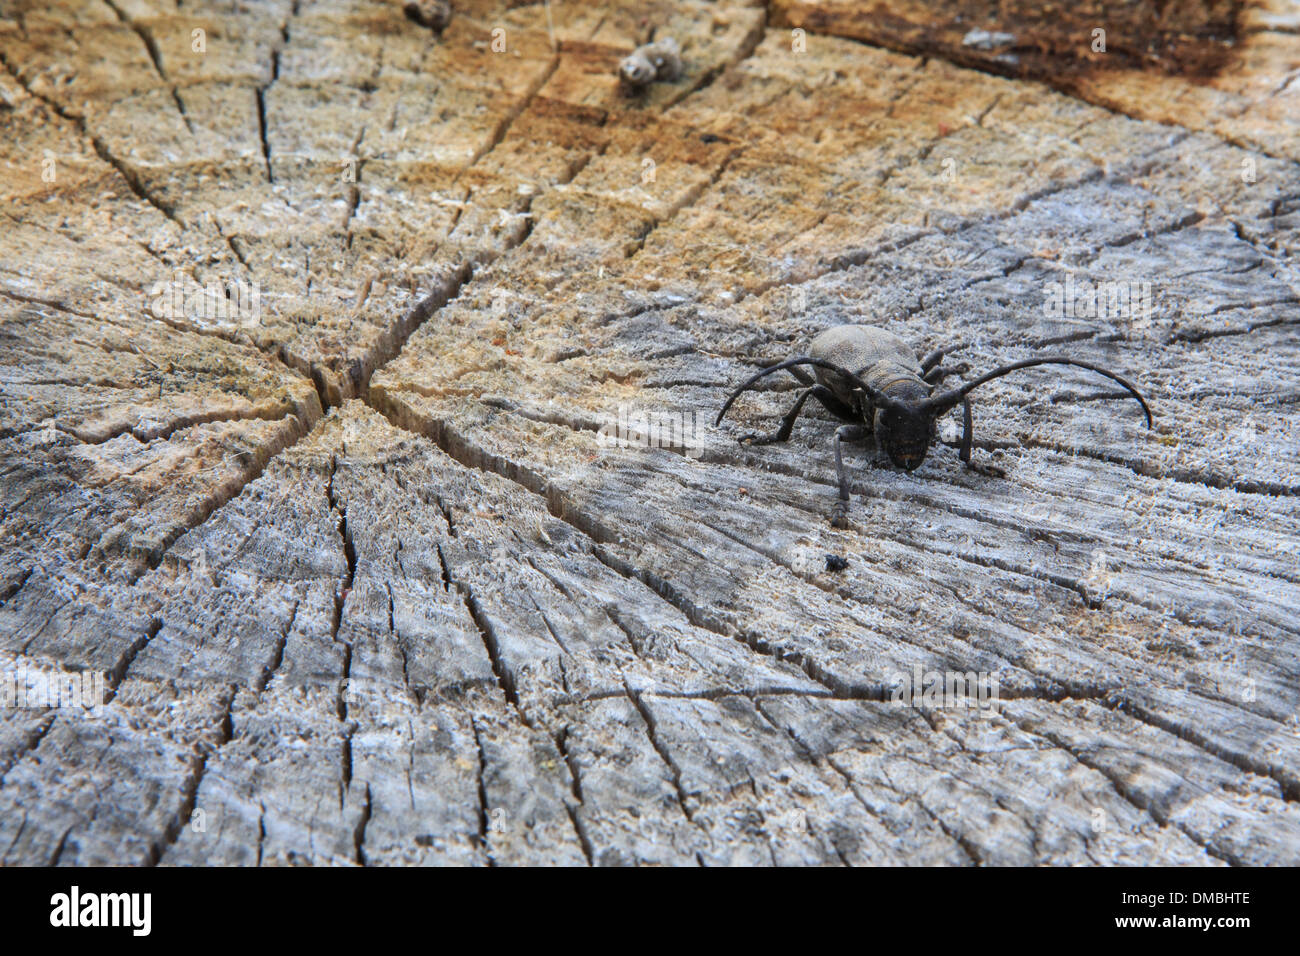 Beetle on cut tree Stock Photo